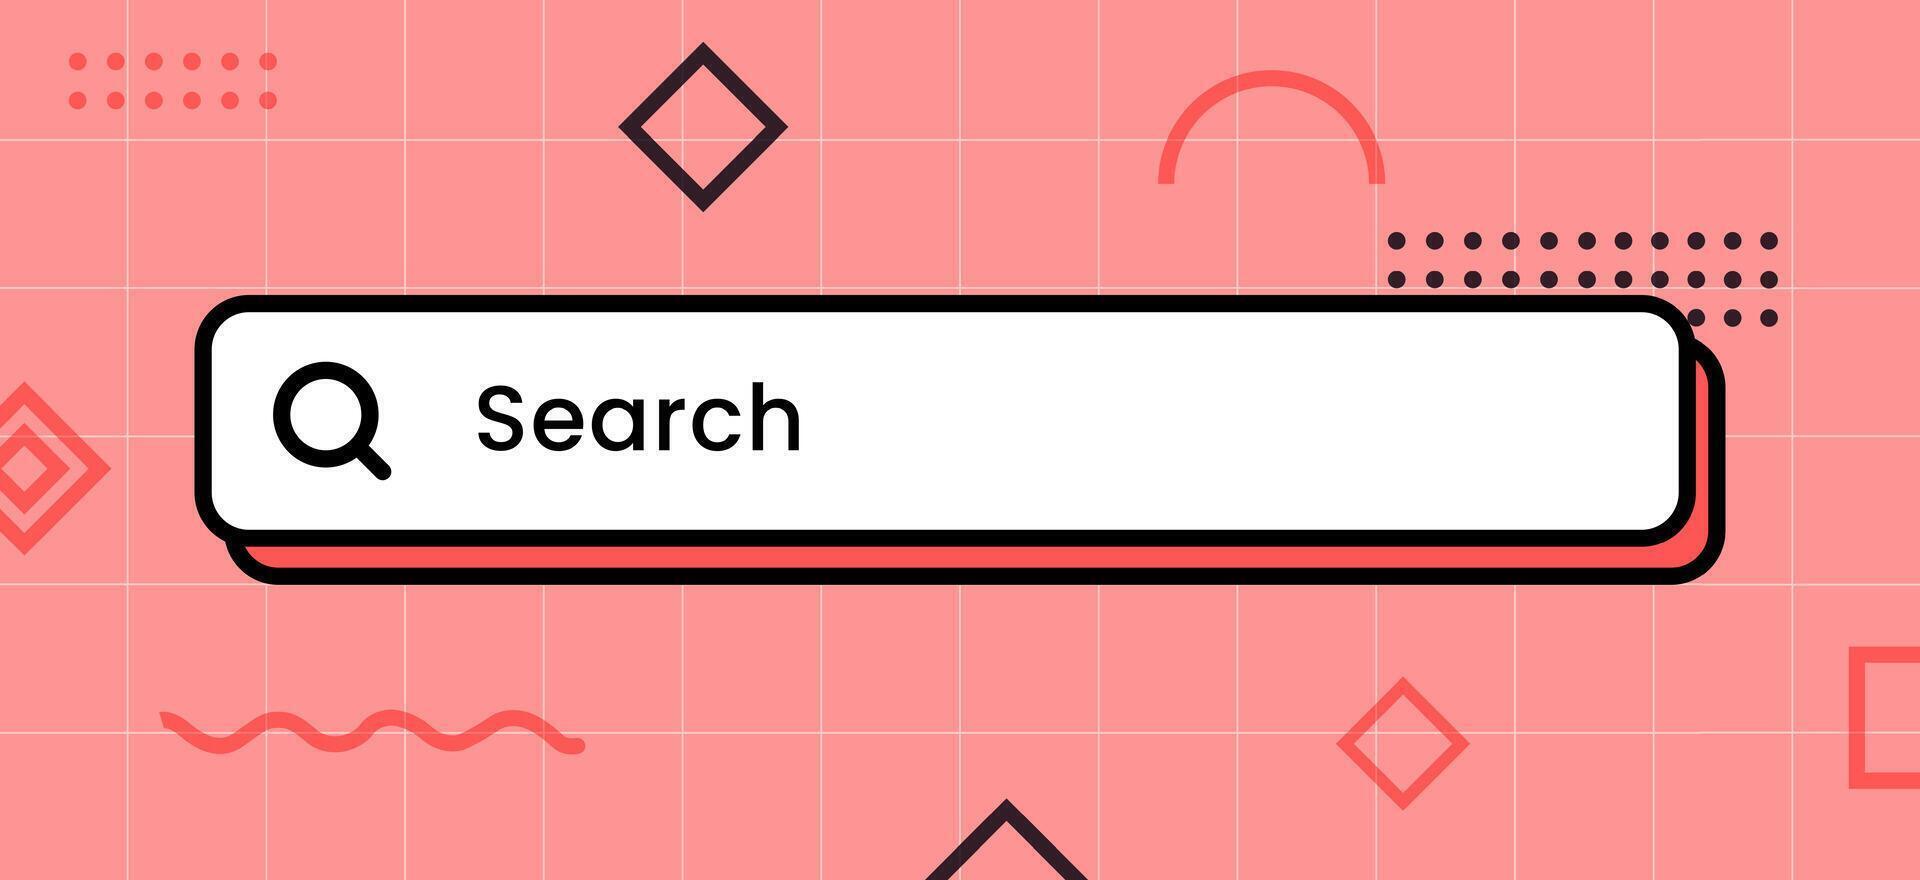 interface du panneau de recherche dans un style design vintage. illustration vectorielle de la barre de recherche. vecteur